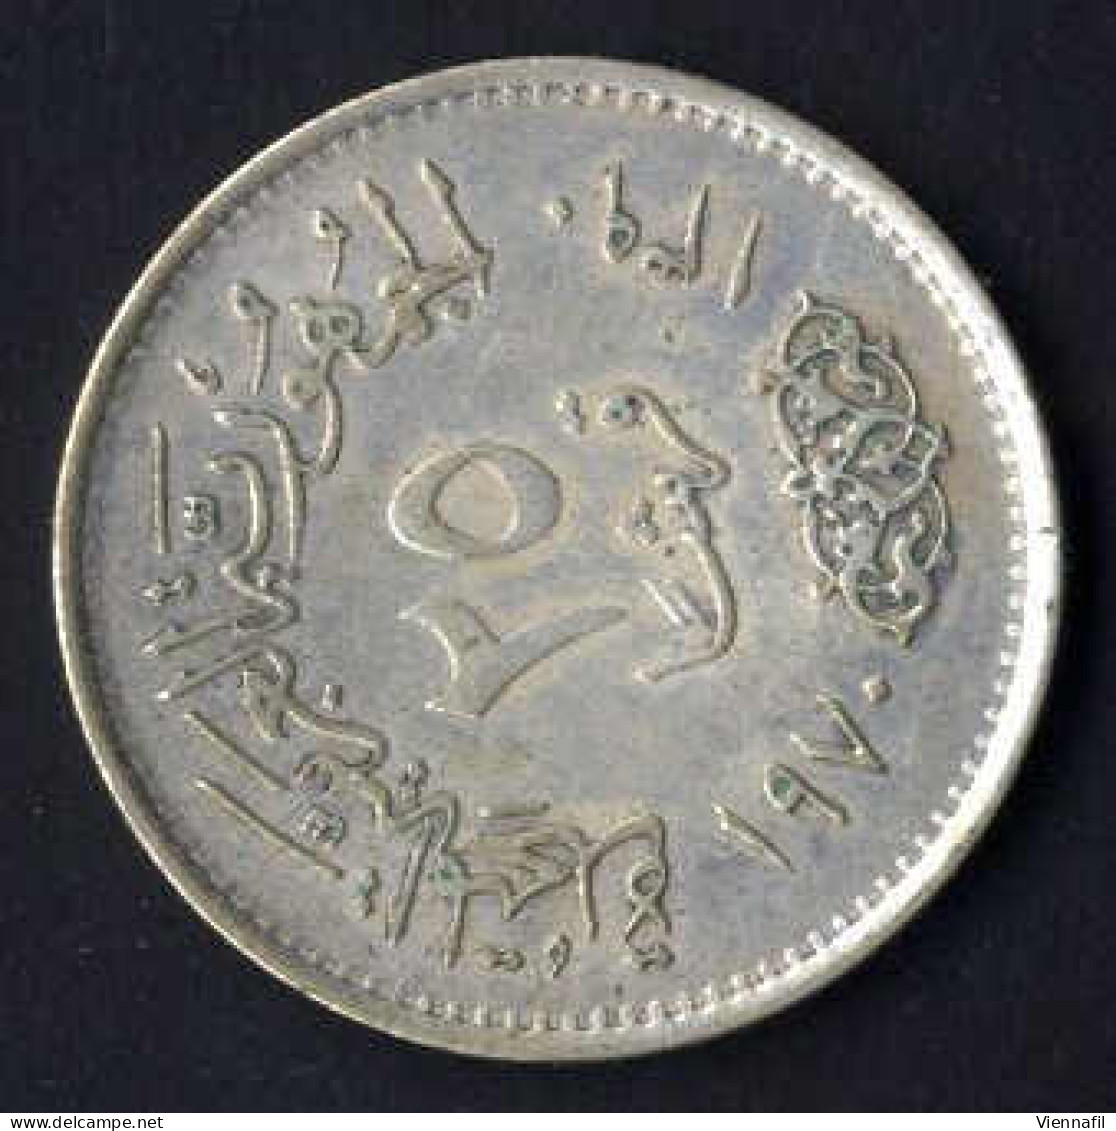 25 Piaster Silber, J1390AH 1970 Nasser, KM 422, Y 134, Vorzüglich - Egypt